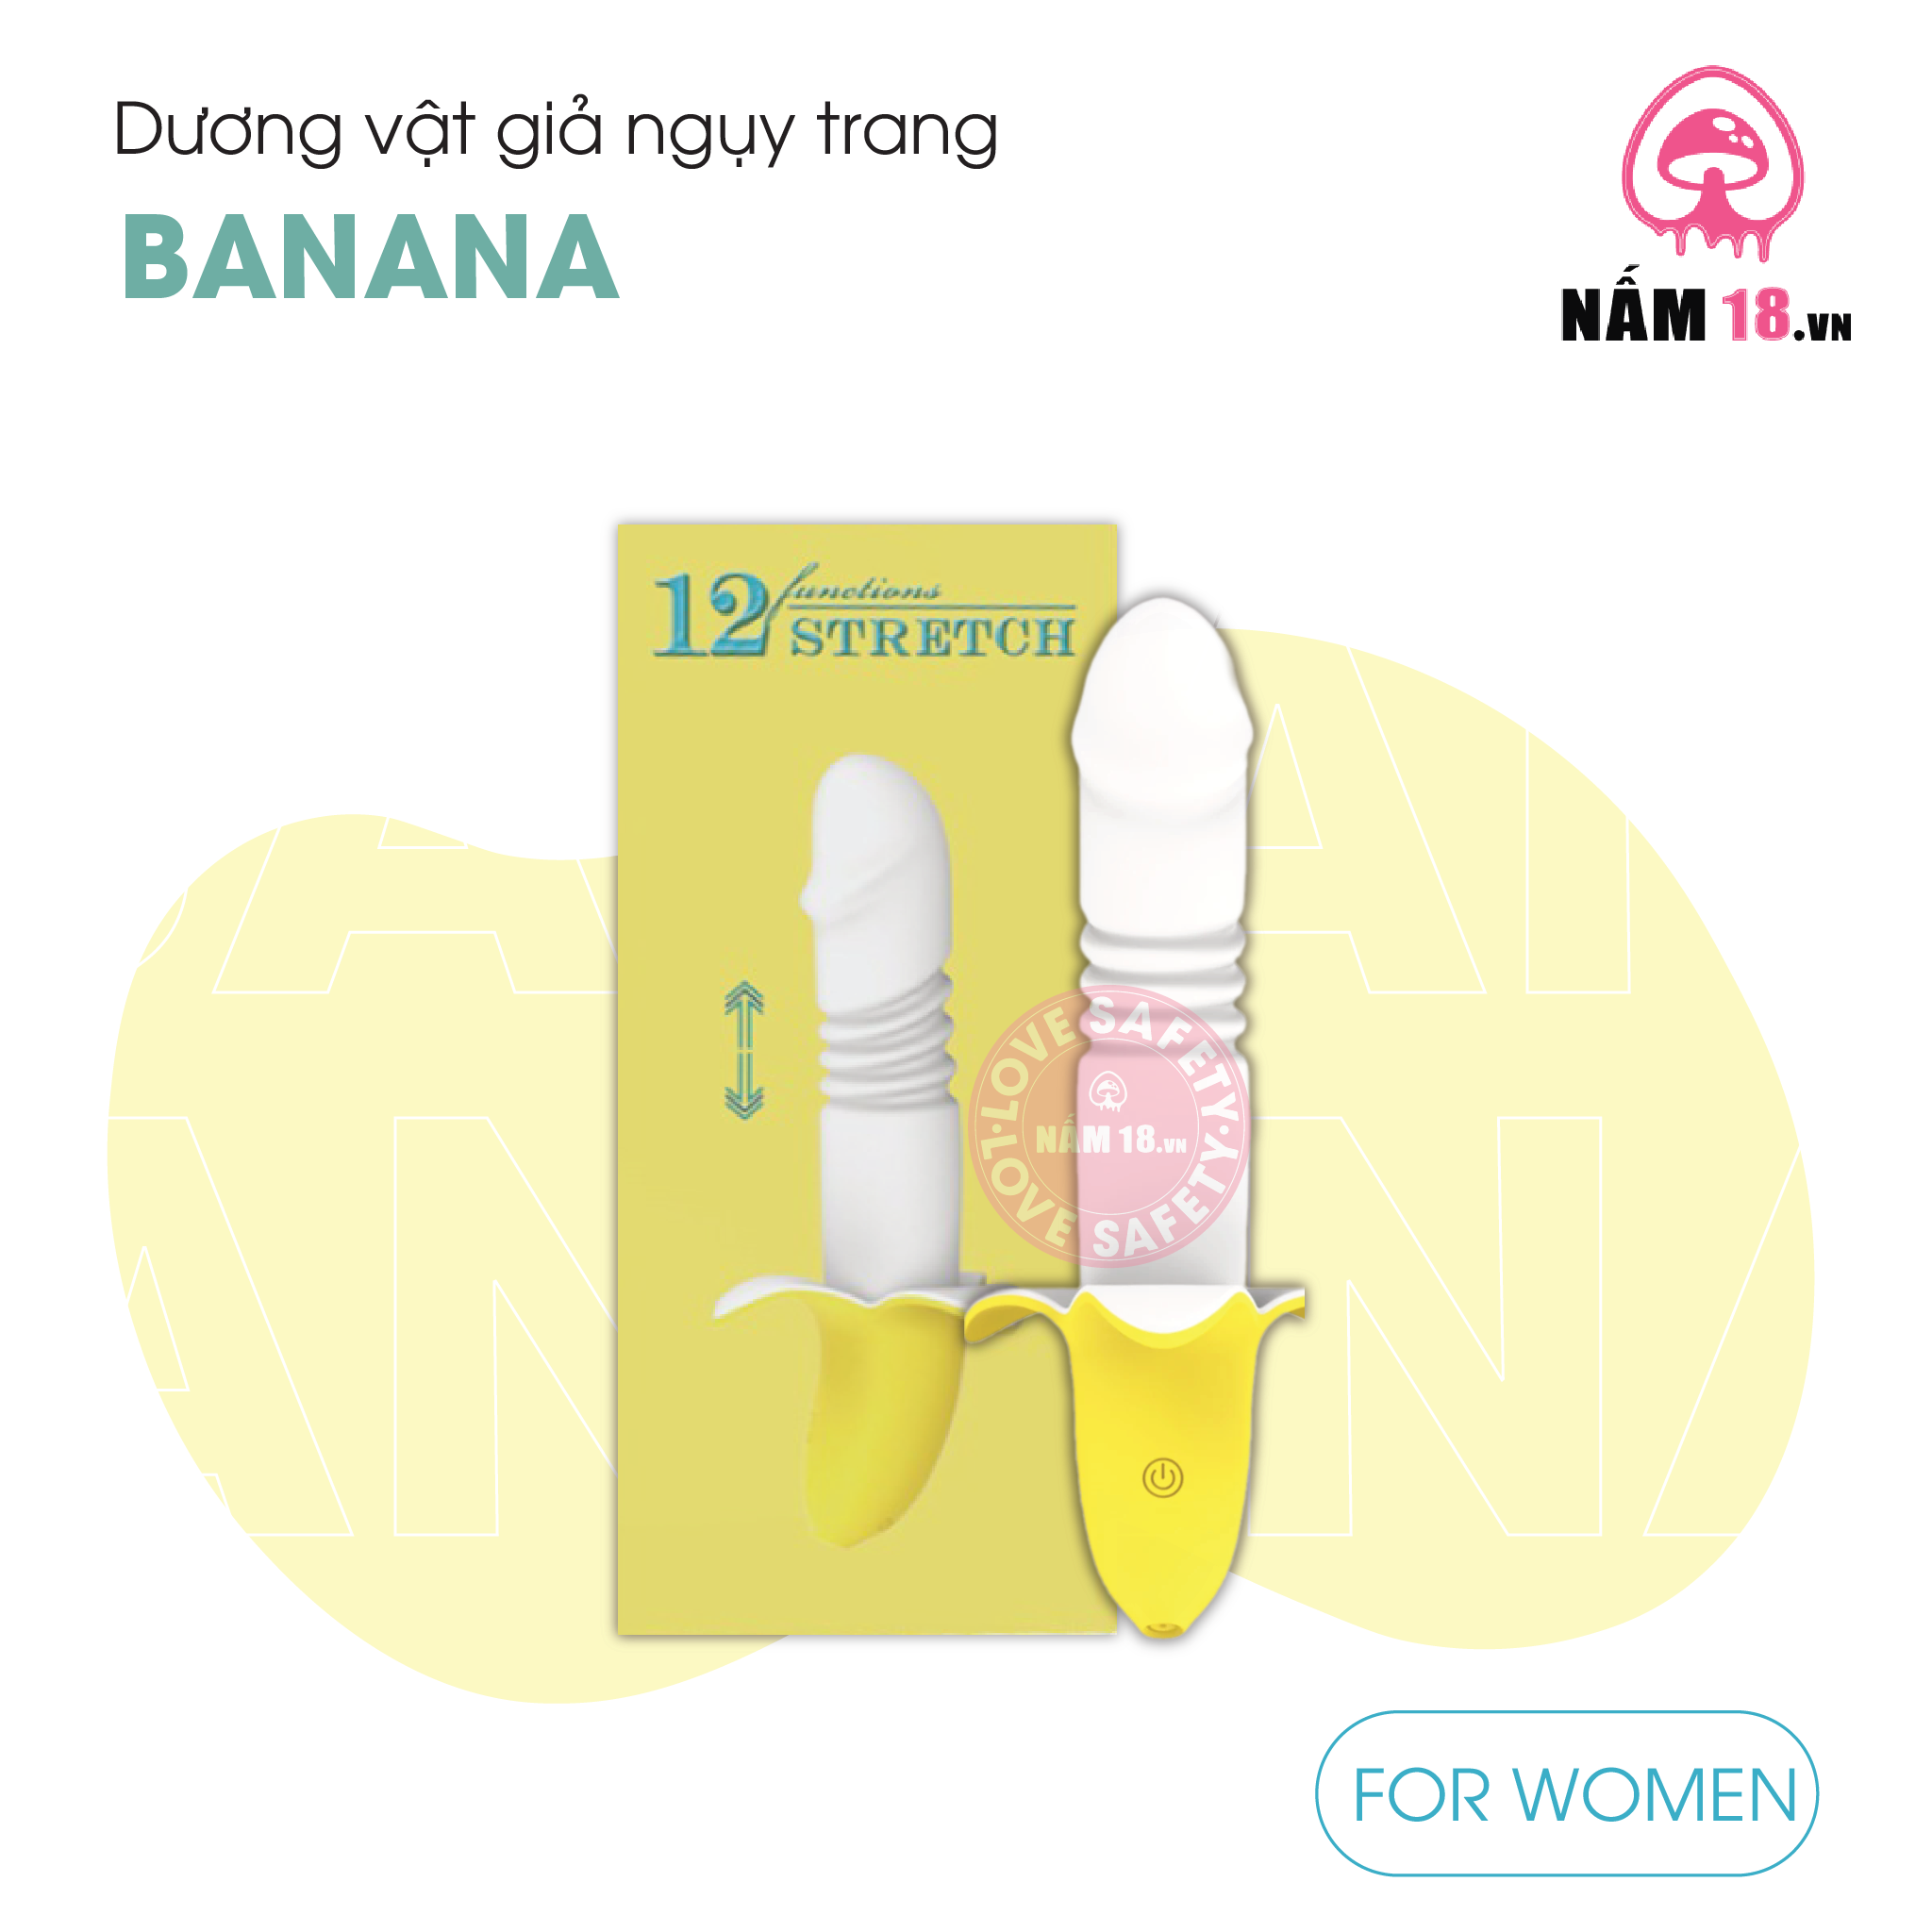  Dương Vật Giả Nguỵ Trang Banana Rung Thụt 12 Chế Độ - Sạc Điện 